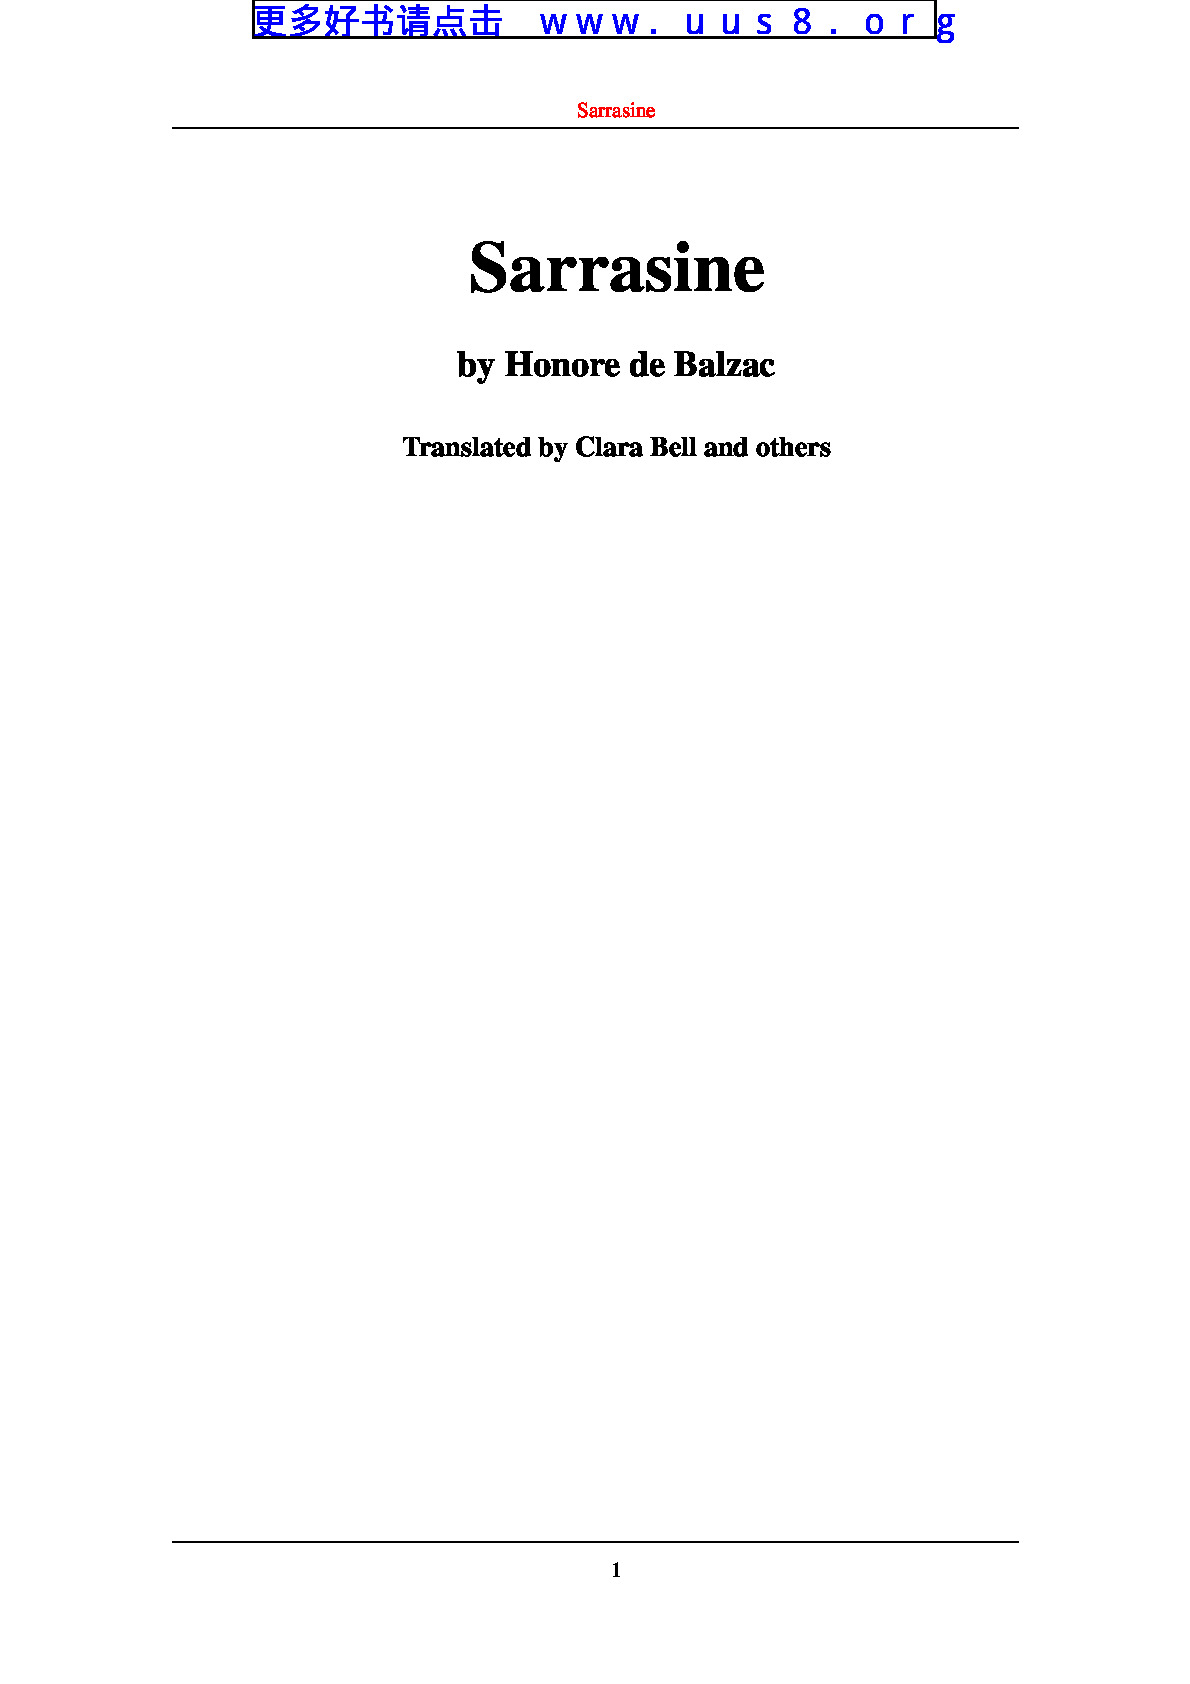 Sarrasine(沙拉辛)